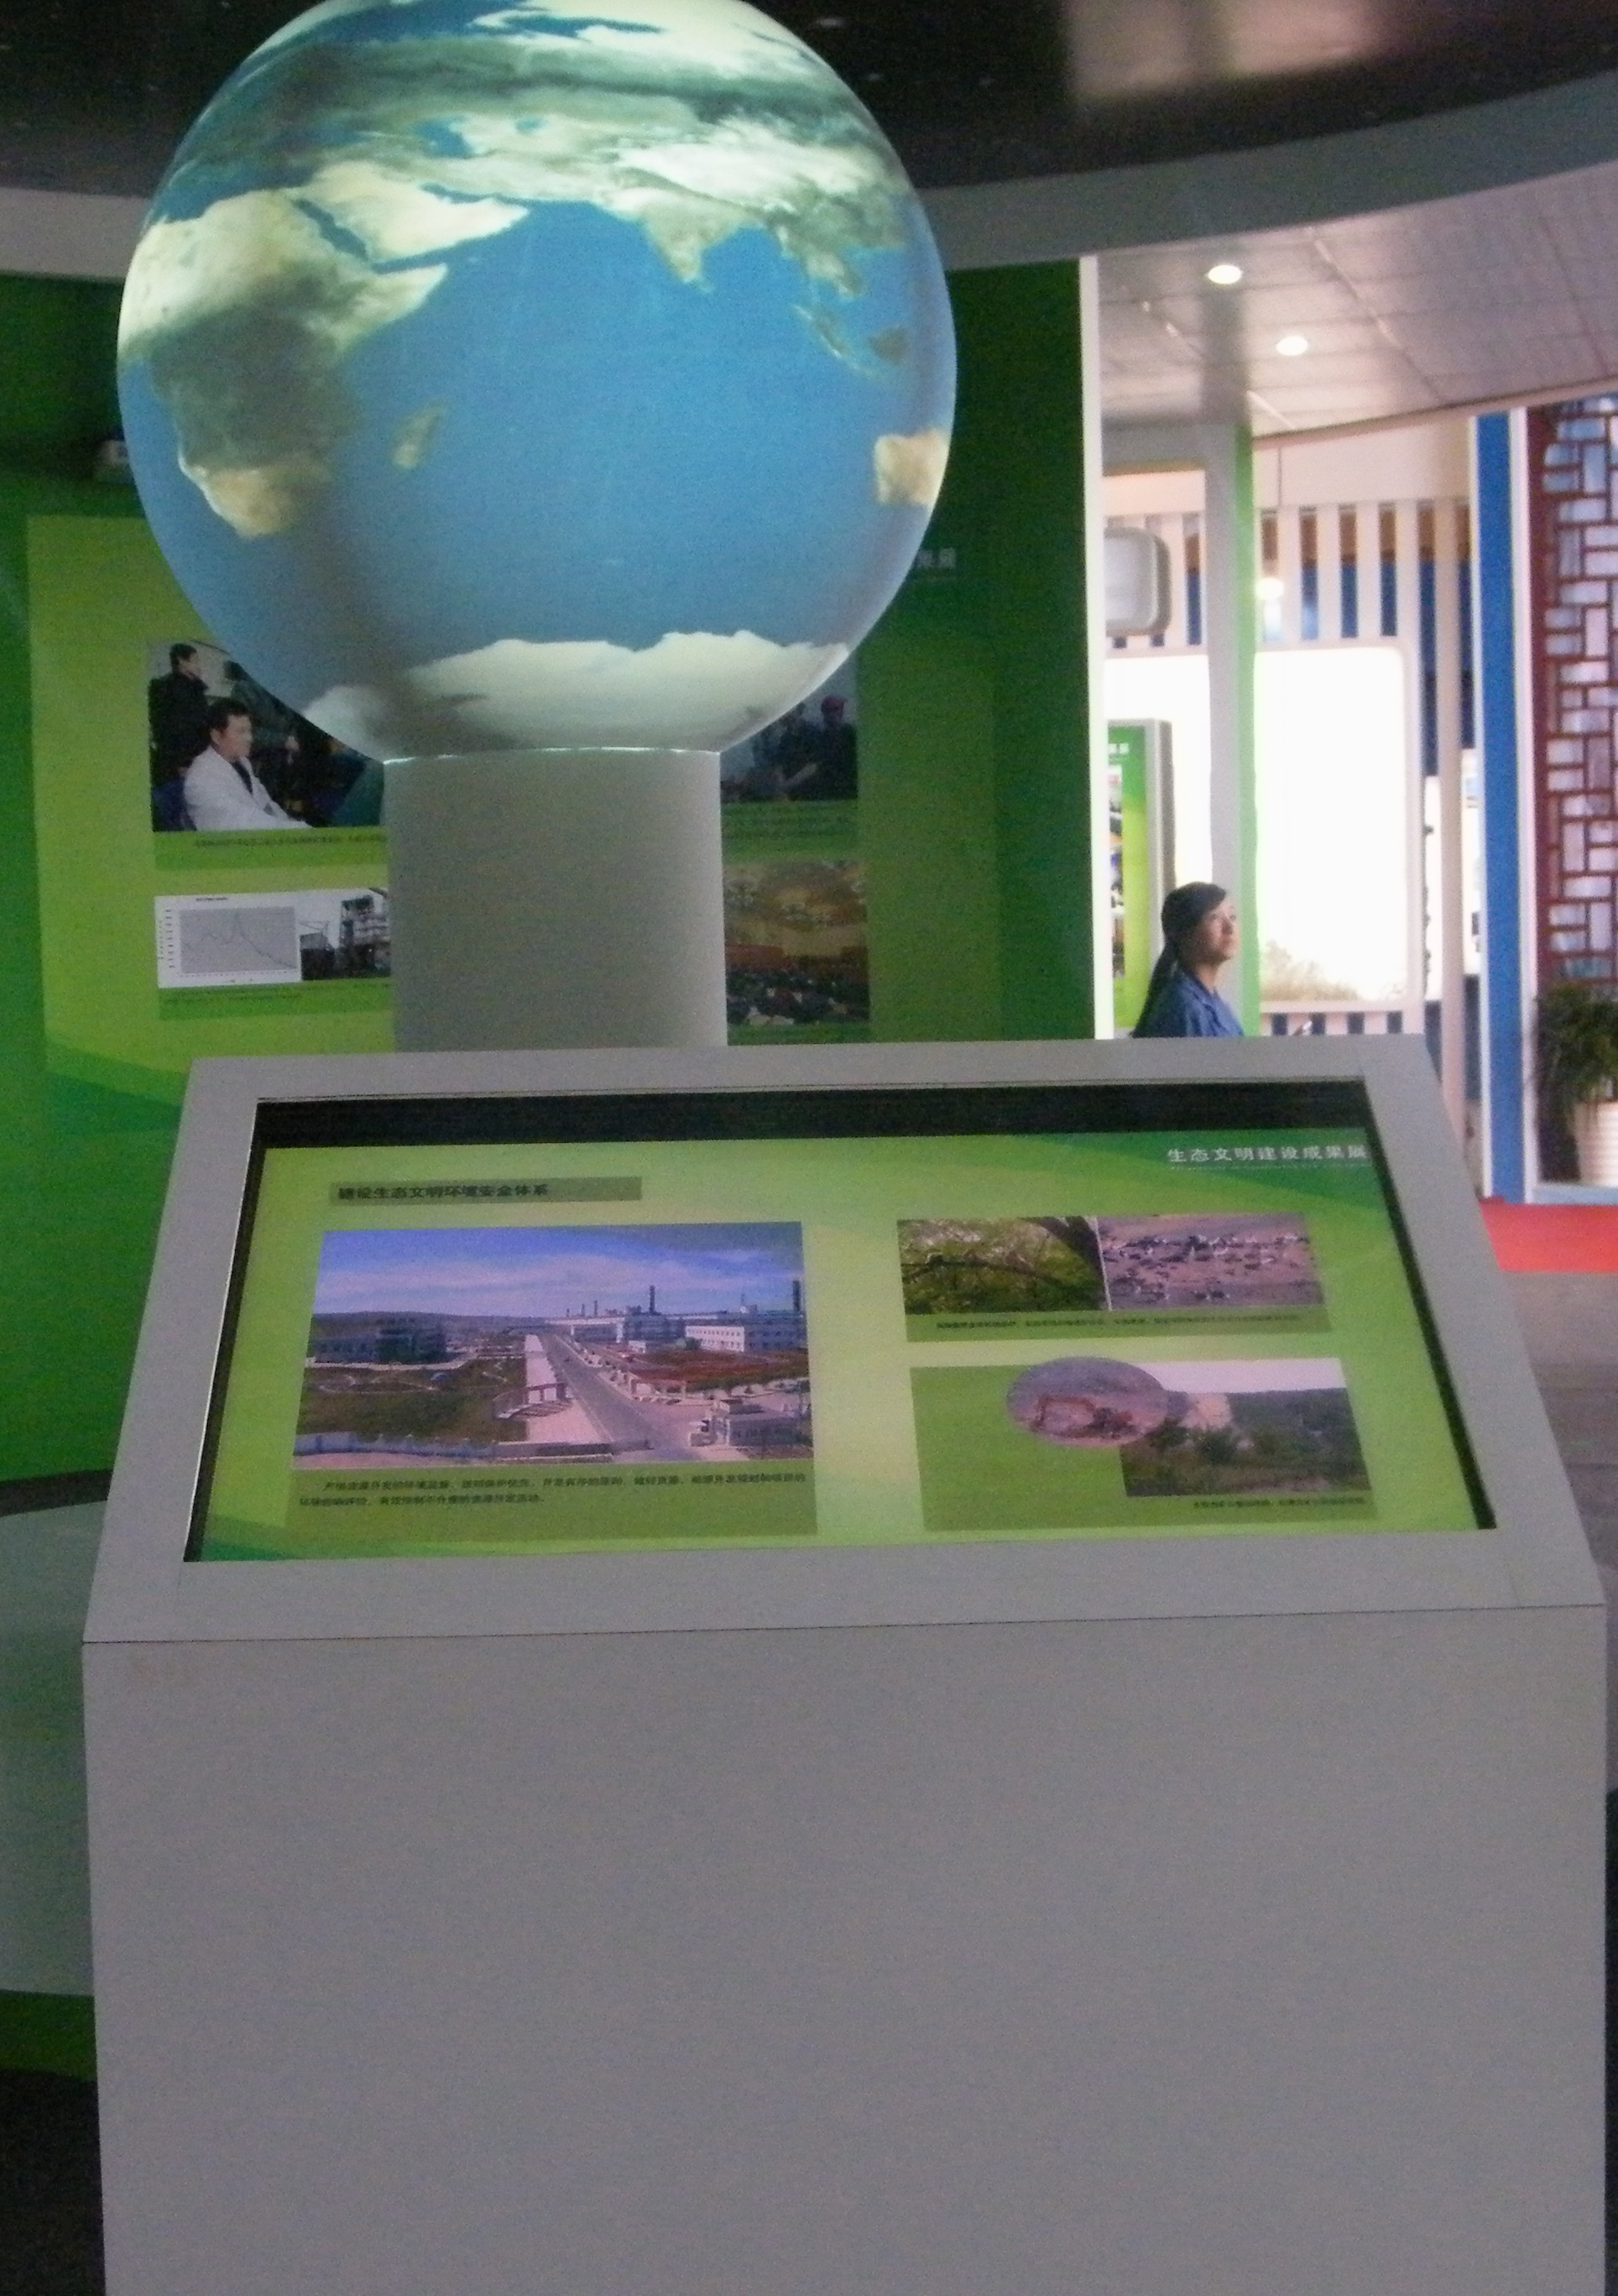 球幕展示系统、SOS科学球幕系统、内外球幕投影展示系统、激光球幕展示图片